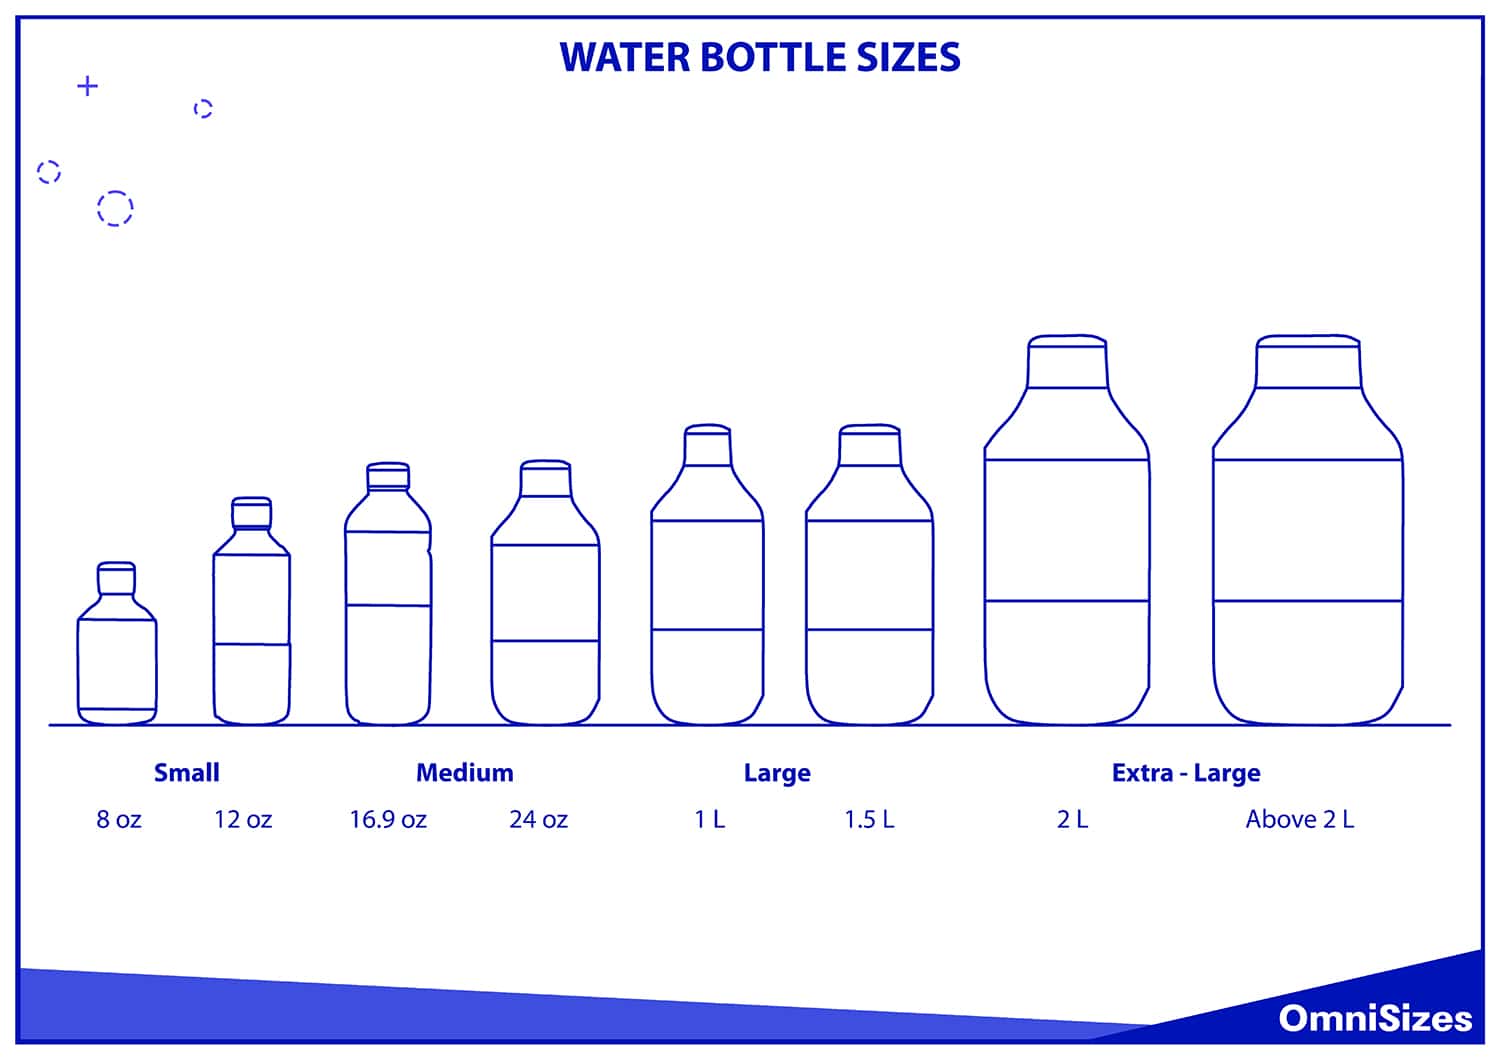 Water bottle sizes